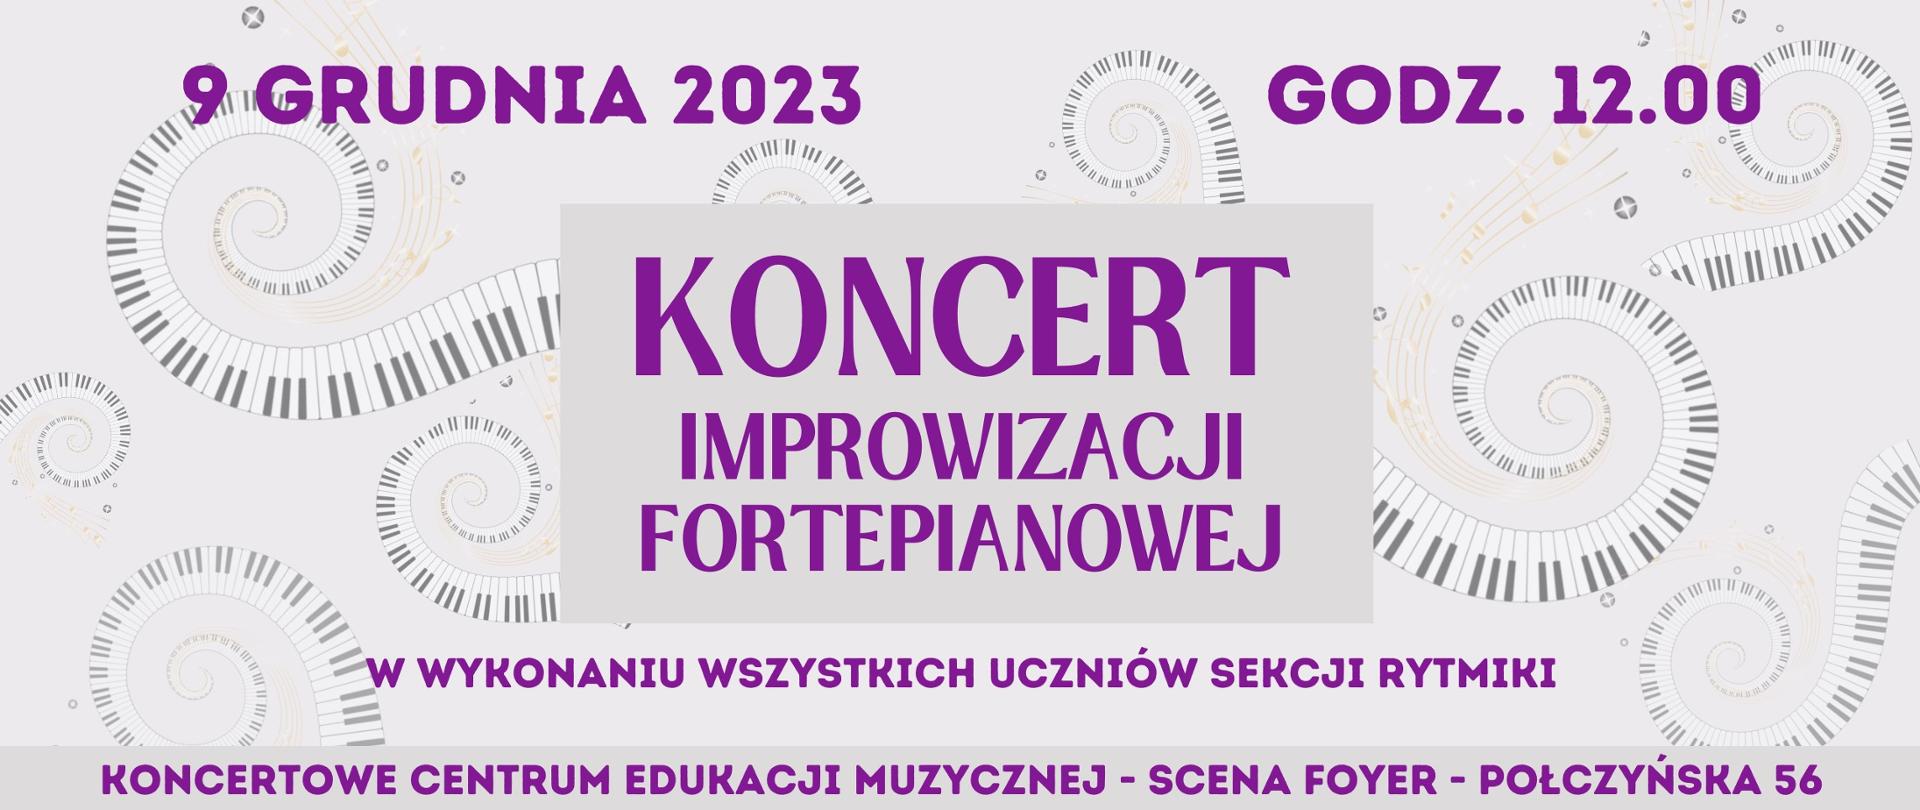 Grafika - Koncert Improwizacji Fortepianowej - 9.12.2023